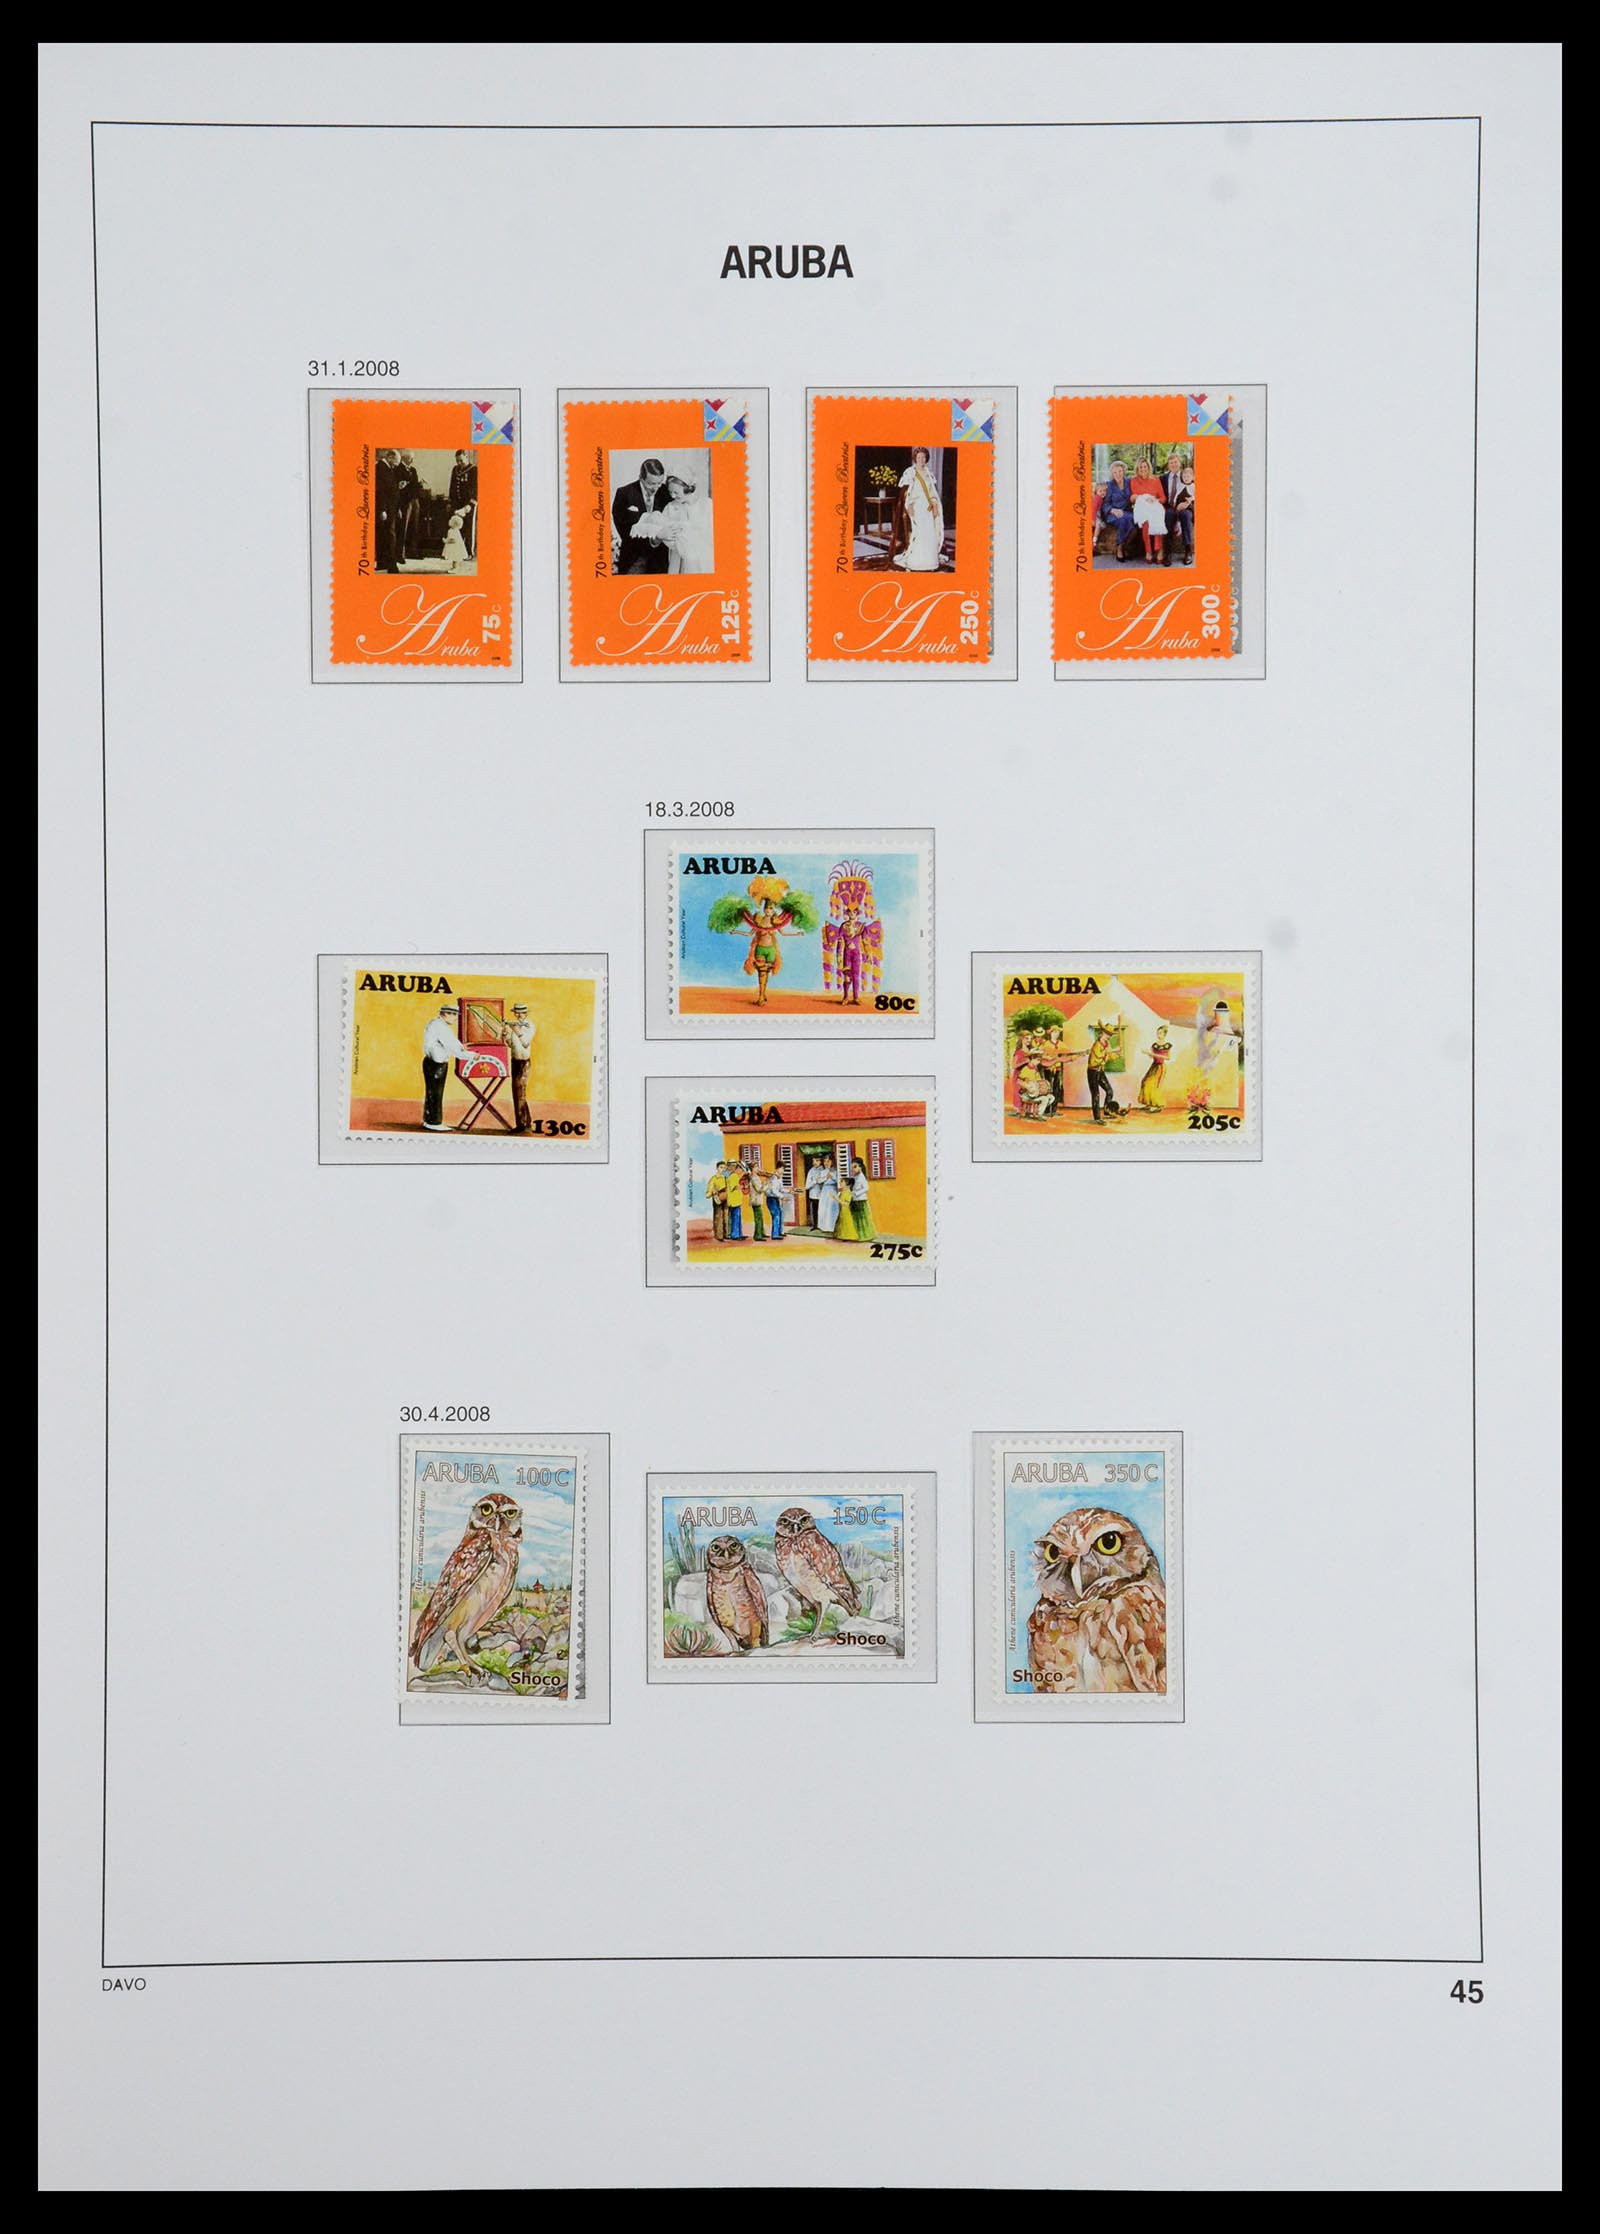 36369 050 - Stamp collection 36369 Aruba 1986-2009.